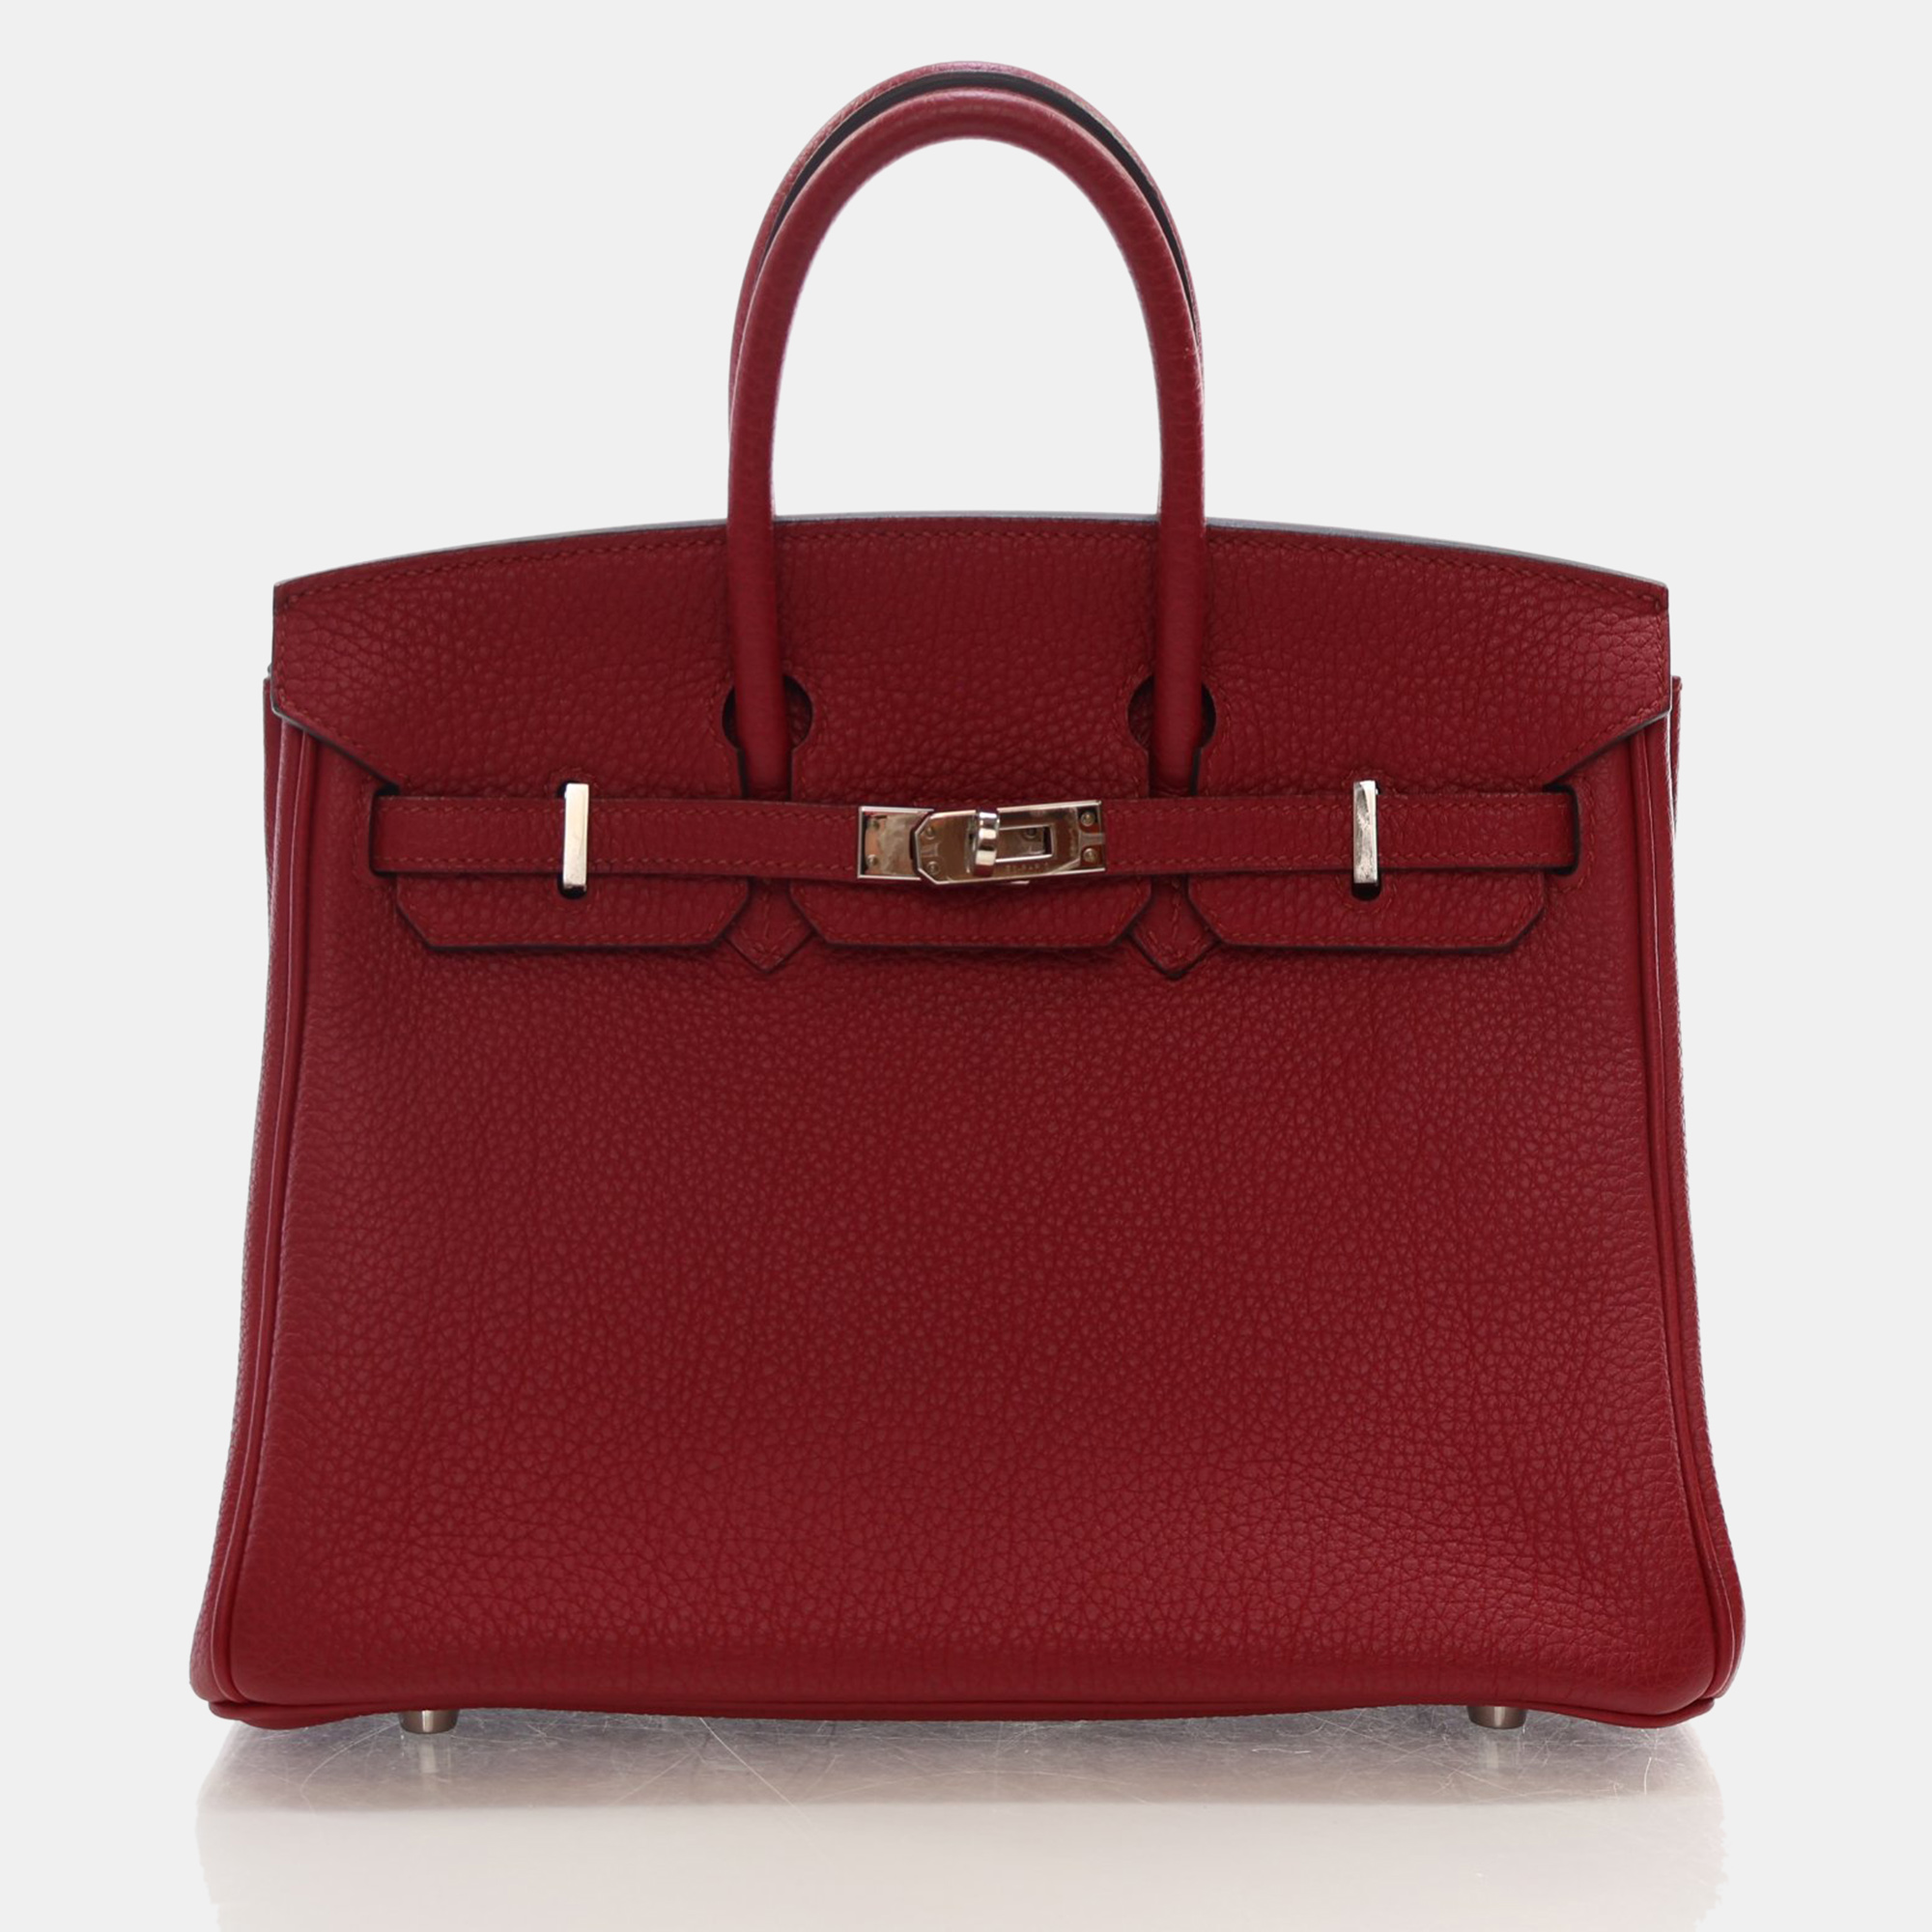 Pre-owned Hermes Rouge Grenat Togo Phw Birkin 25 Handbag In Burgundy